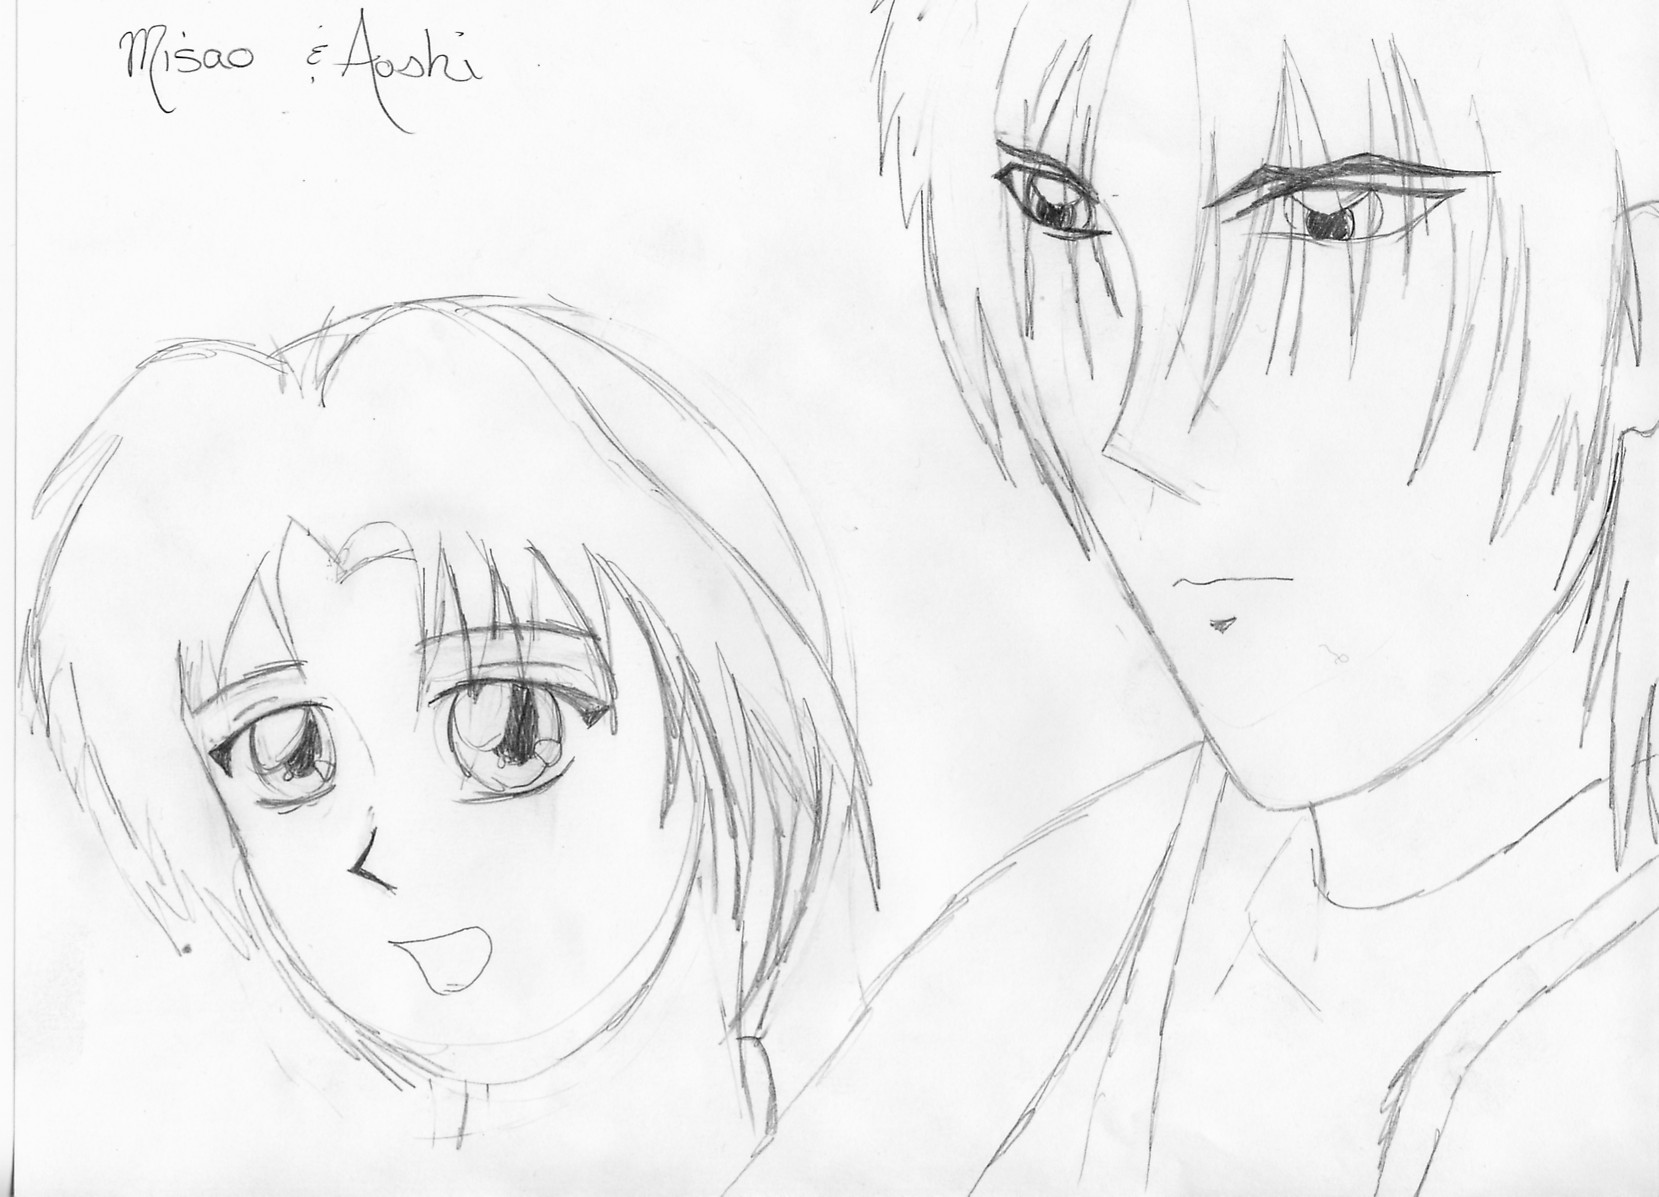 Aoshi and Misao